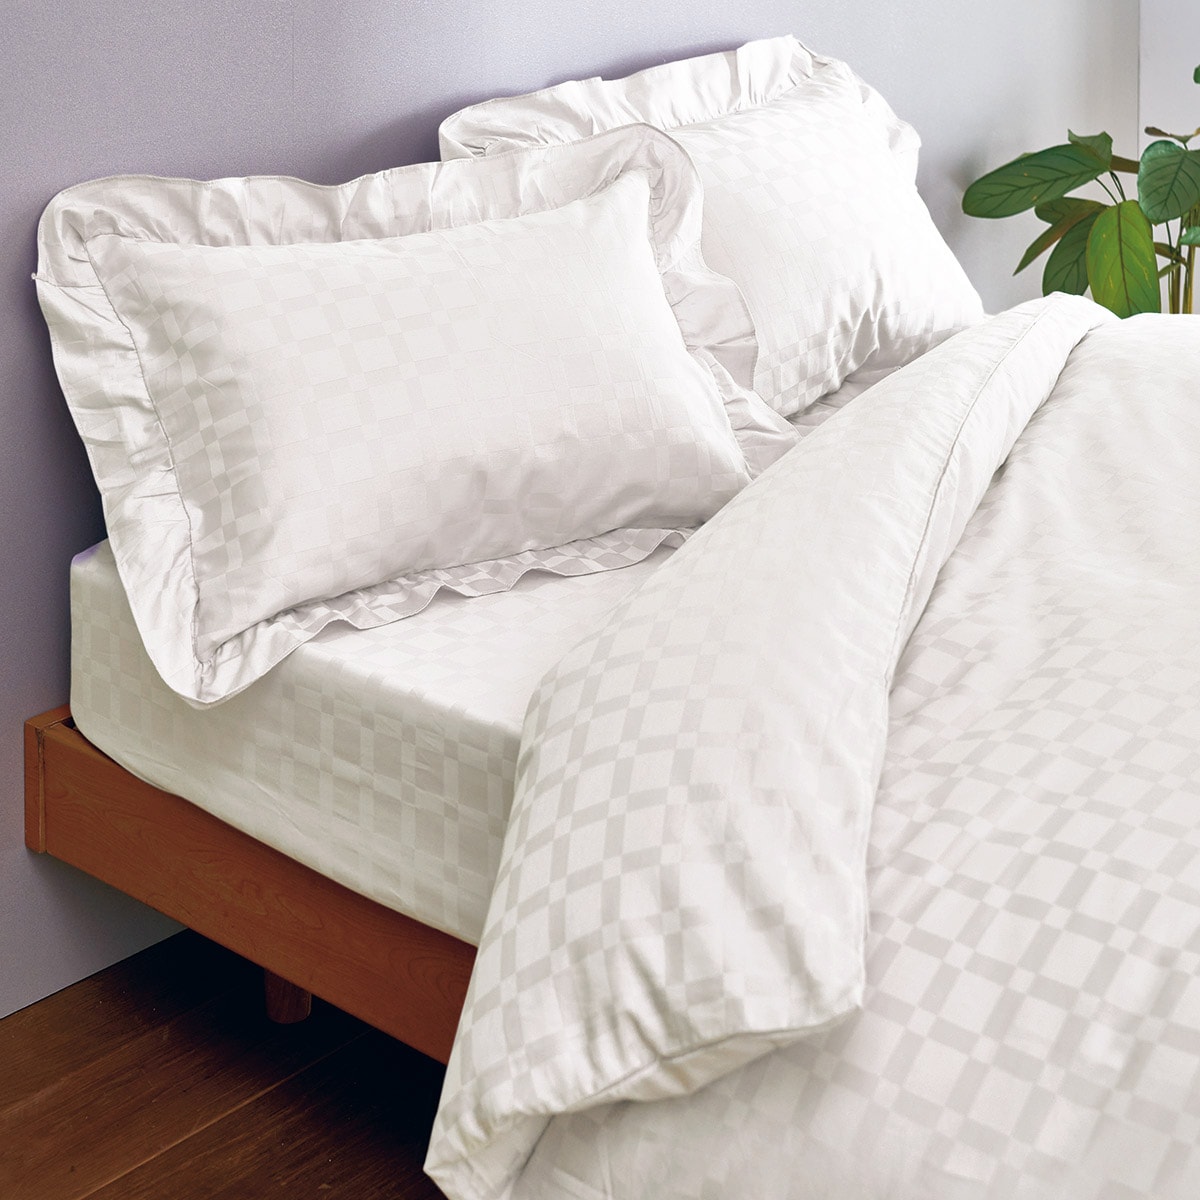 綿100%掛け布団カバー(ホテル感覚の高密度タイプ) - 寝具の通販なら